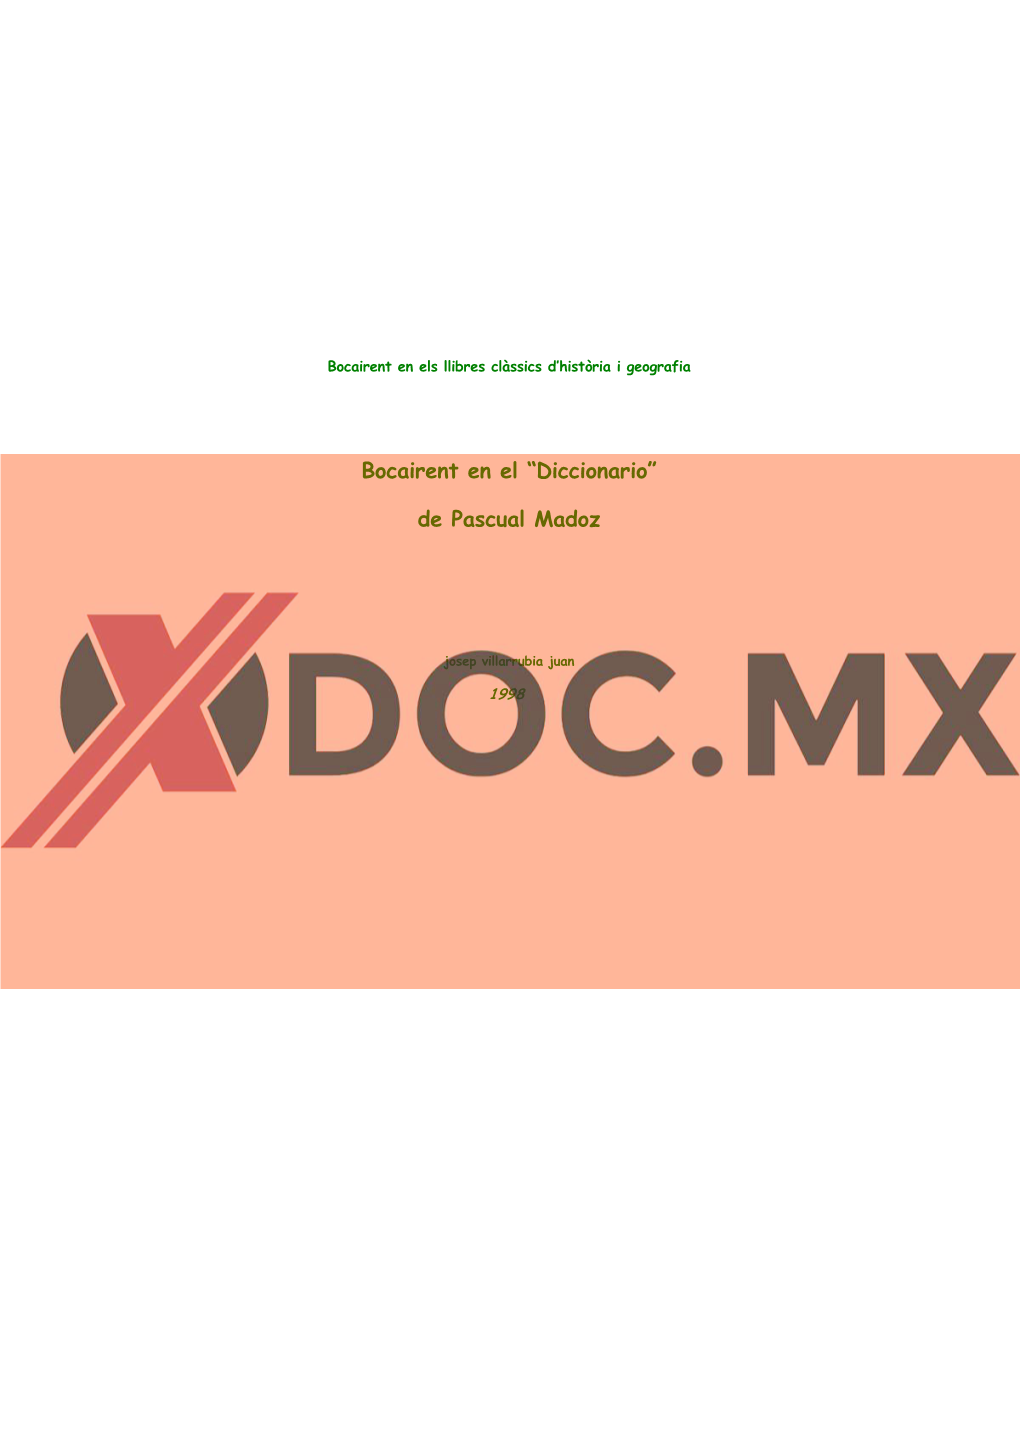 Bocairent En El “Diccionario” De Pascual Madoz